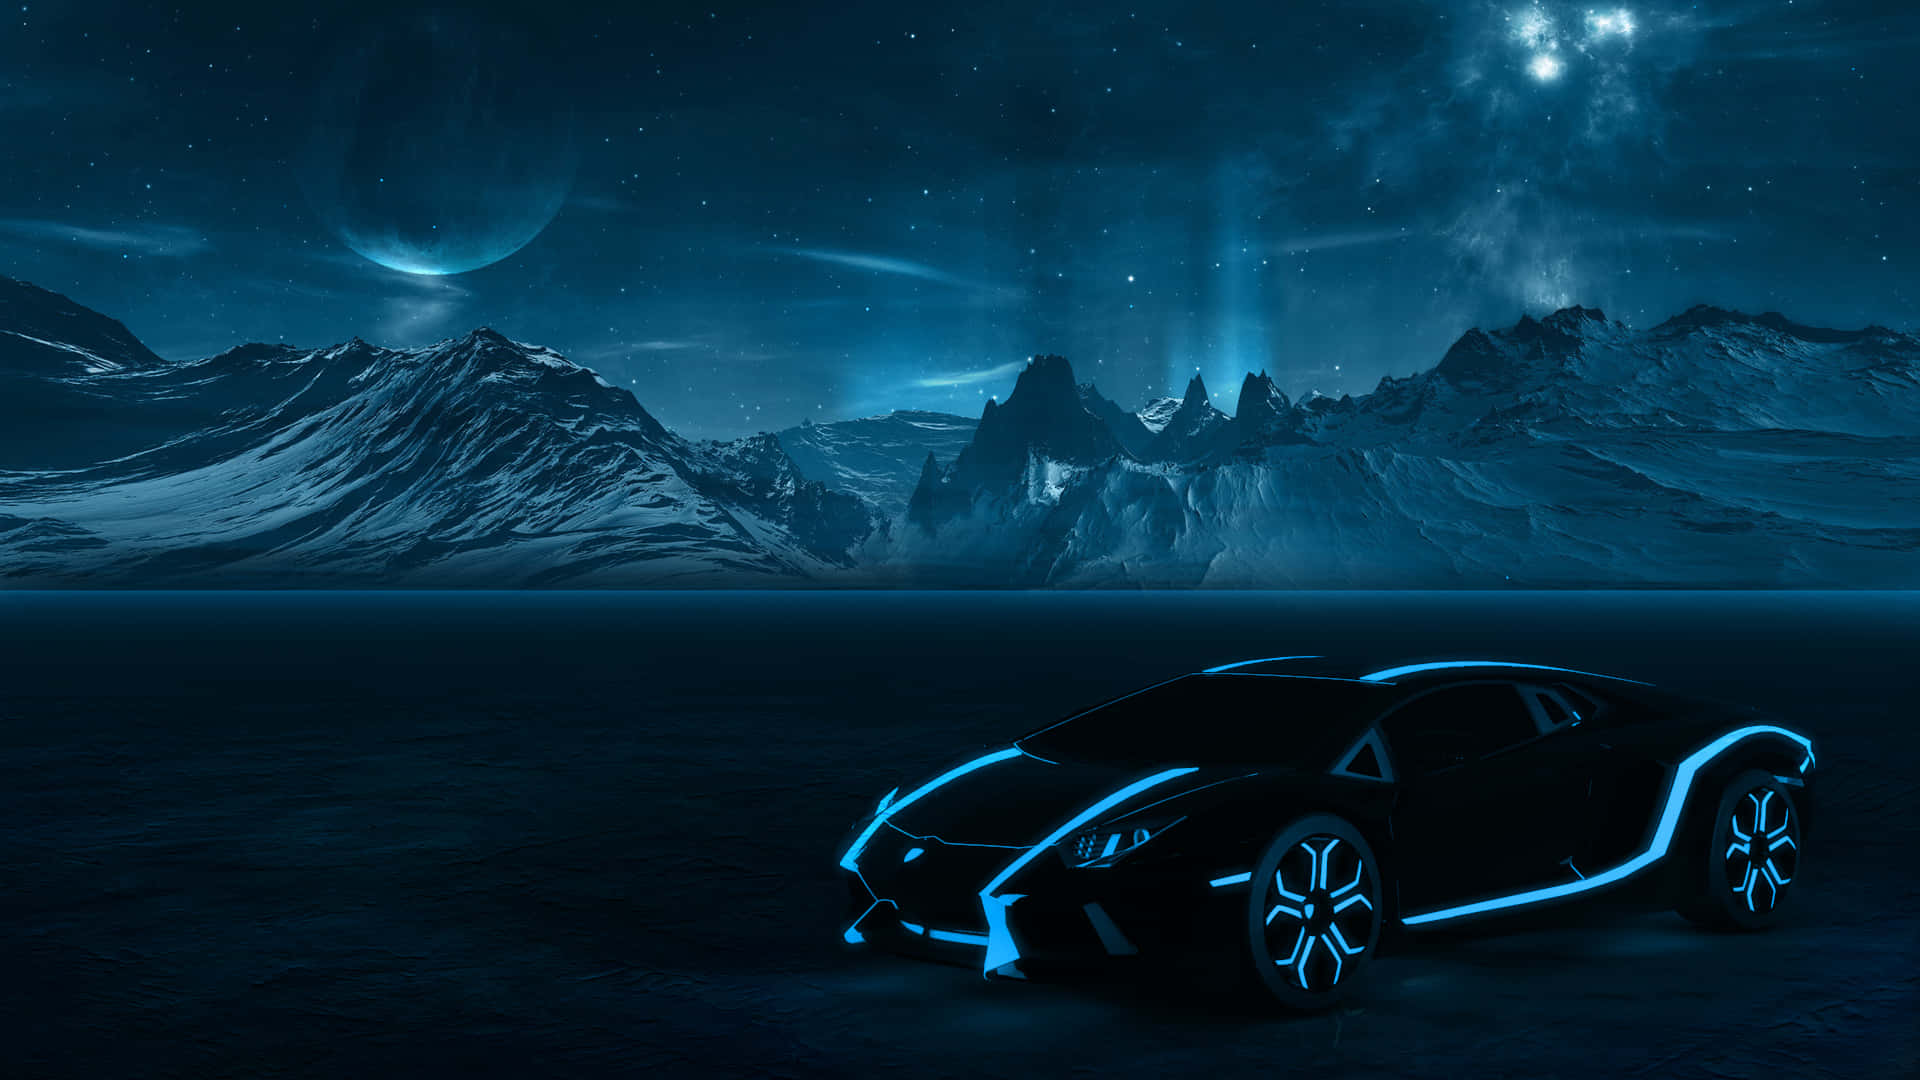 Einauto Wird Am Nachthimmel Mit Blauem Licht Dargestellt.